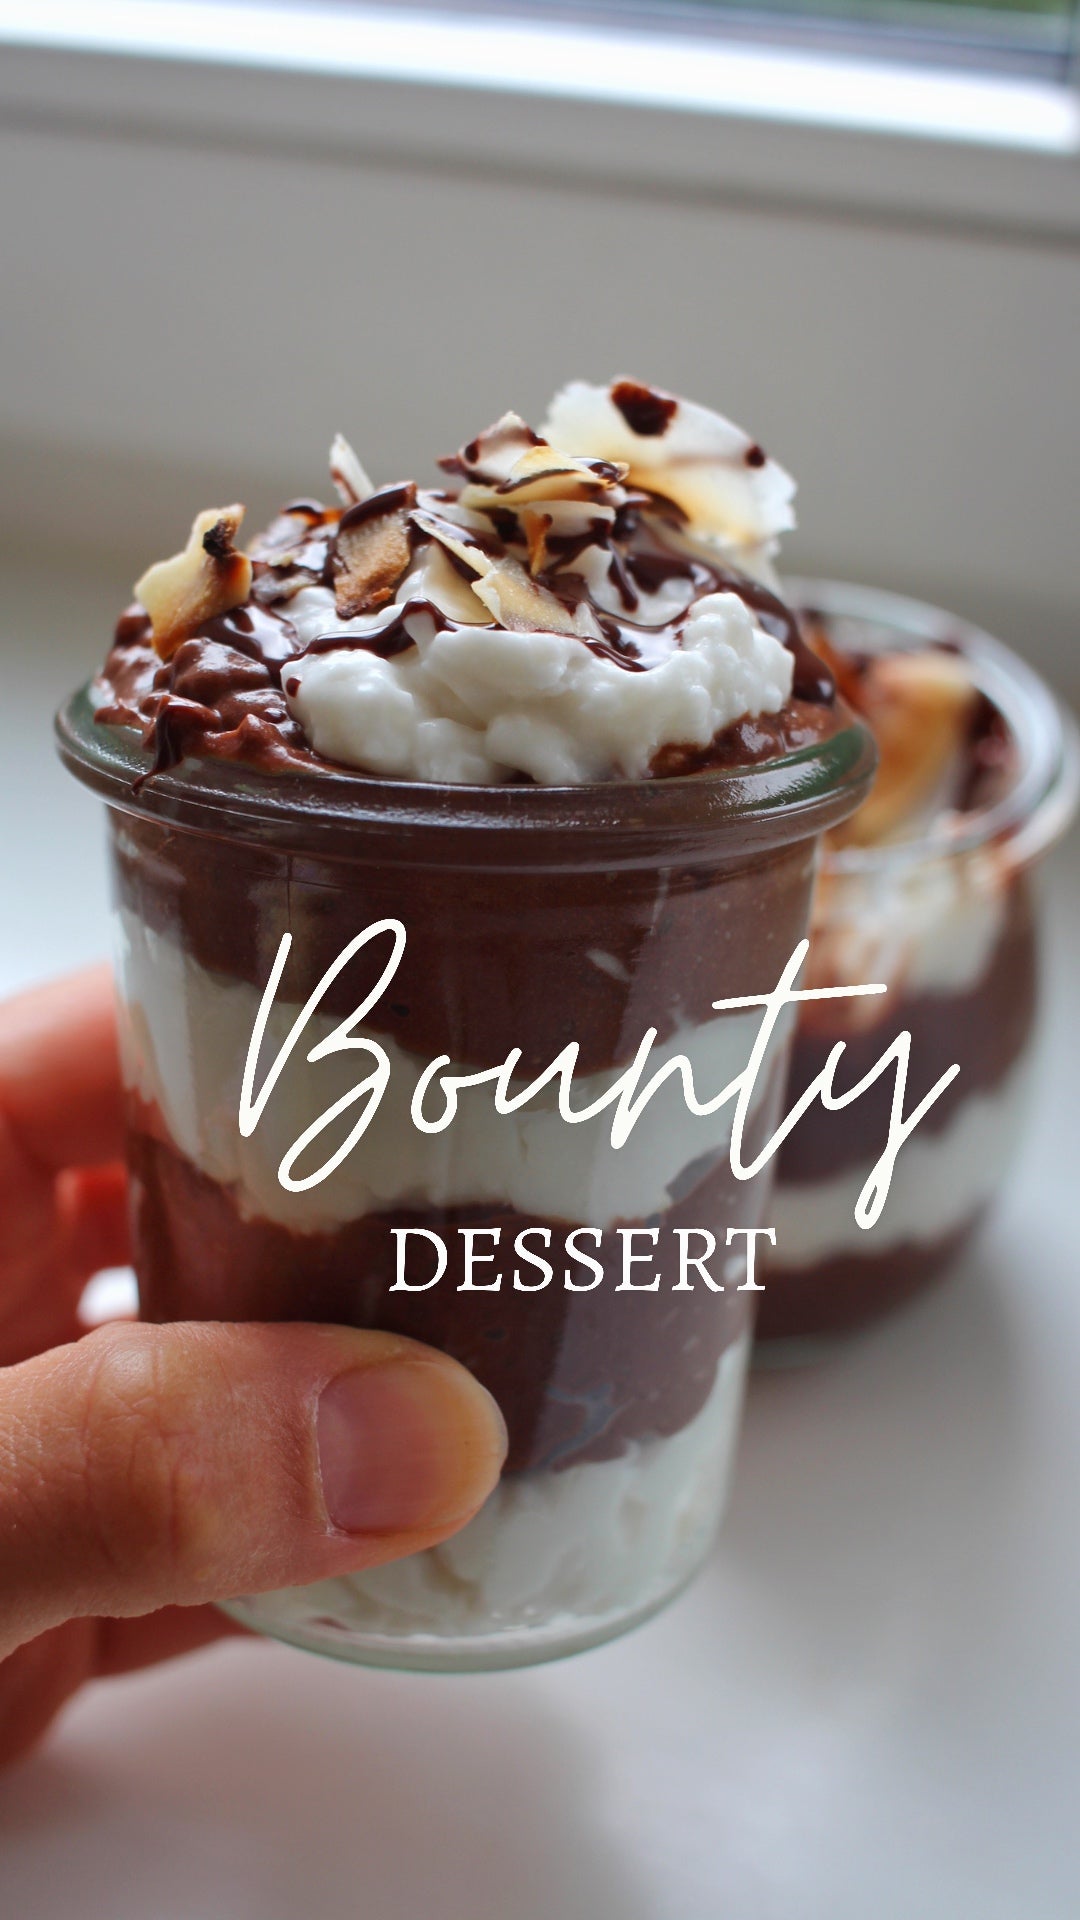 Bounty Dessert I lecker I zuckerfrei I schnell gemacht